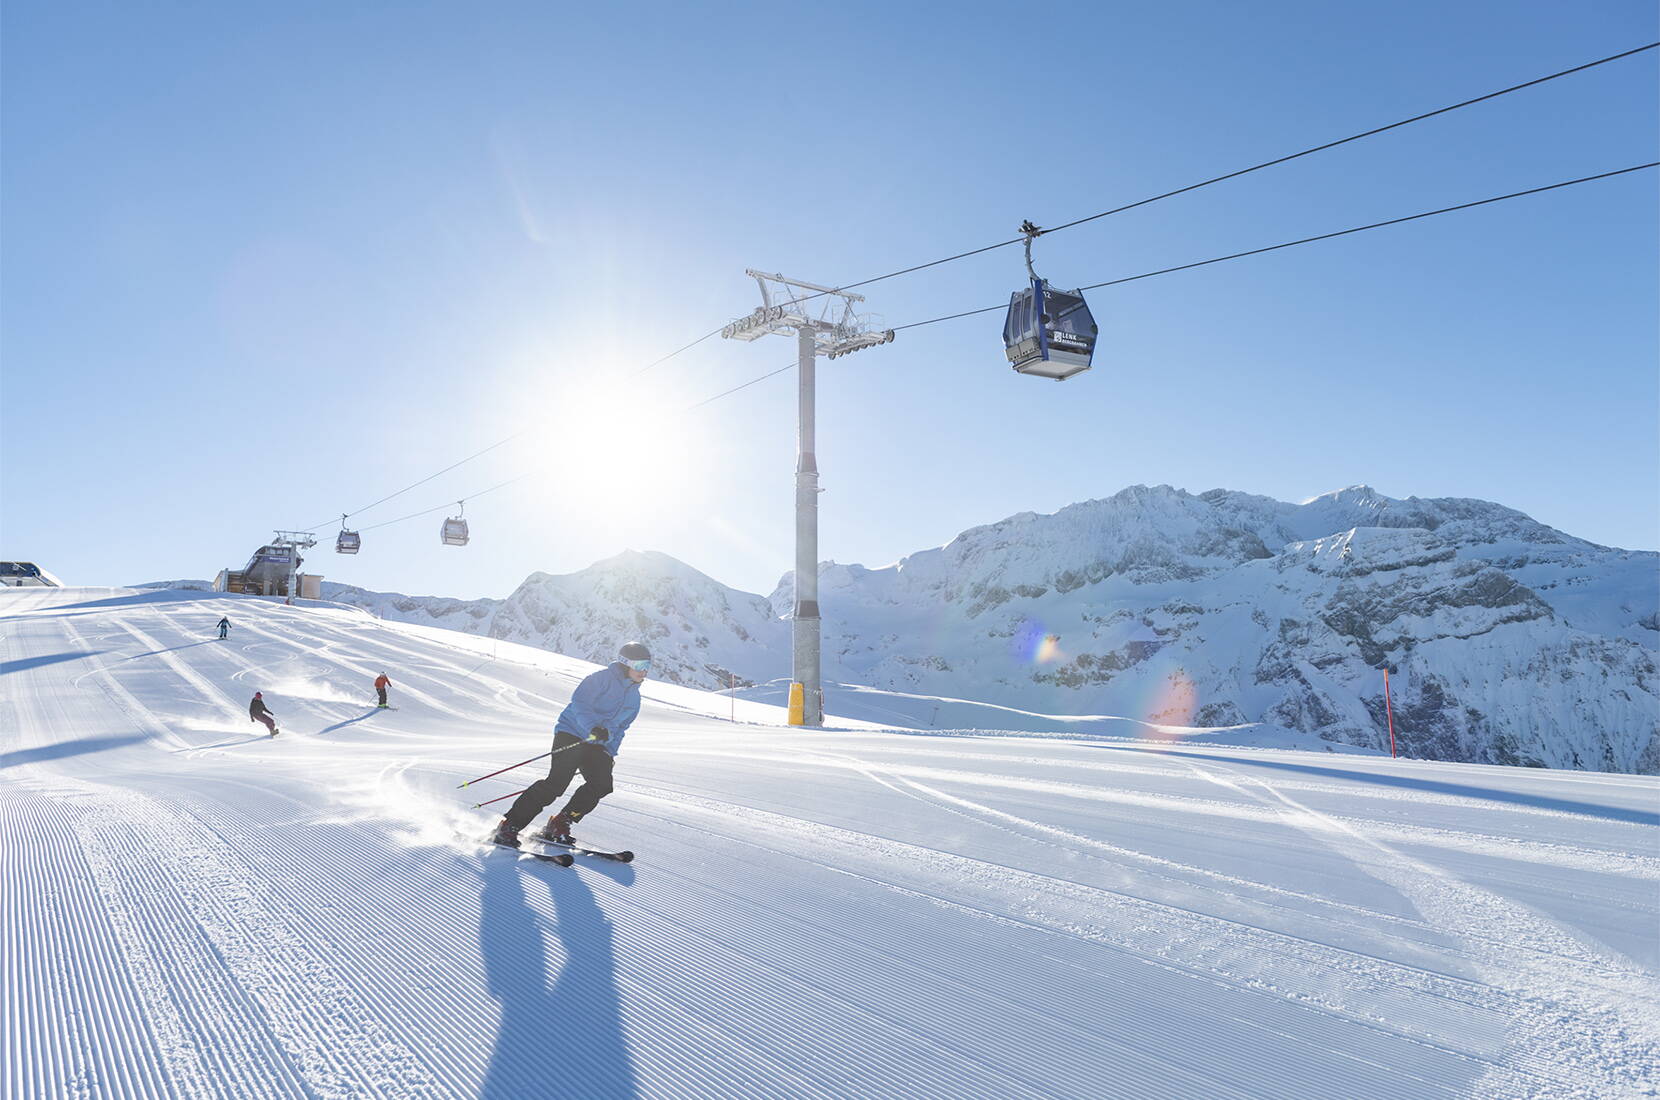 Familienausflug Adelboden-Lenk. Die Skiregion Adelboden-Lenk ist eines der attraktivsten Ski- und Snowboardgebiete der Schweiz. Für viel Charme und Gastfreundschaft sorgen die zahlreichen und bestens gepflegten Berggasthäuser, urchigen Skihütten oder trendigen Schneebars.